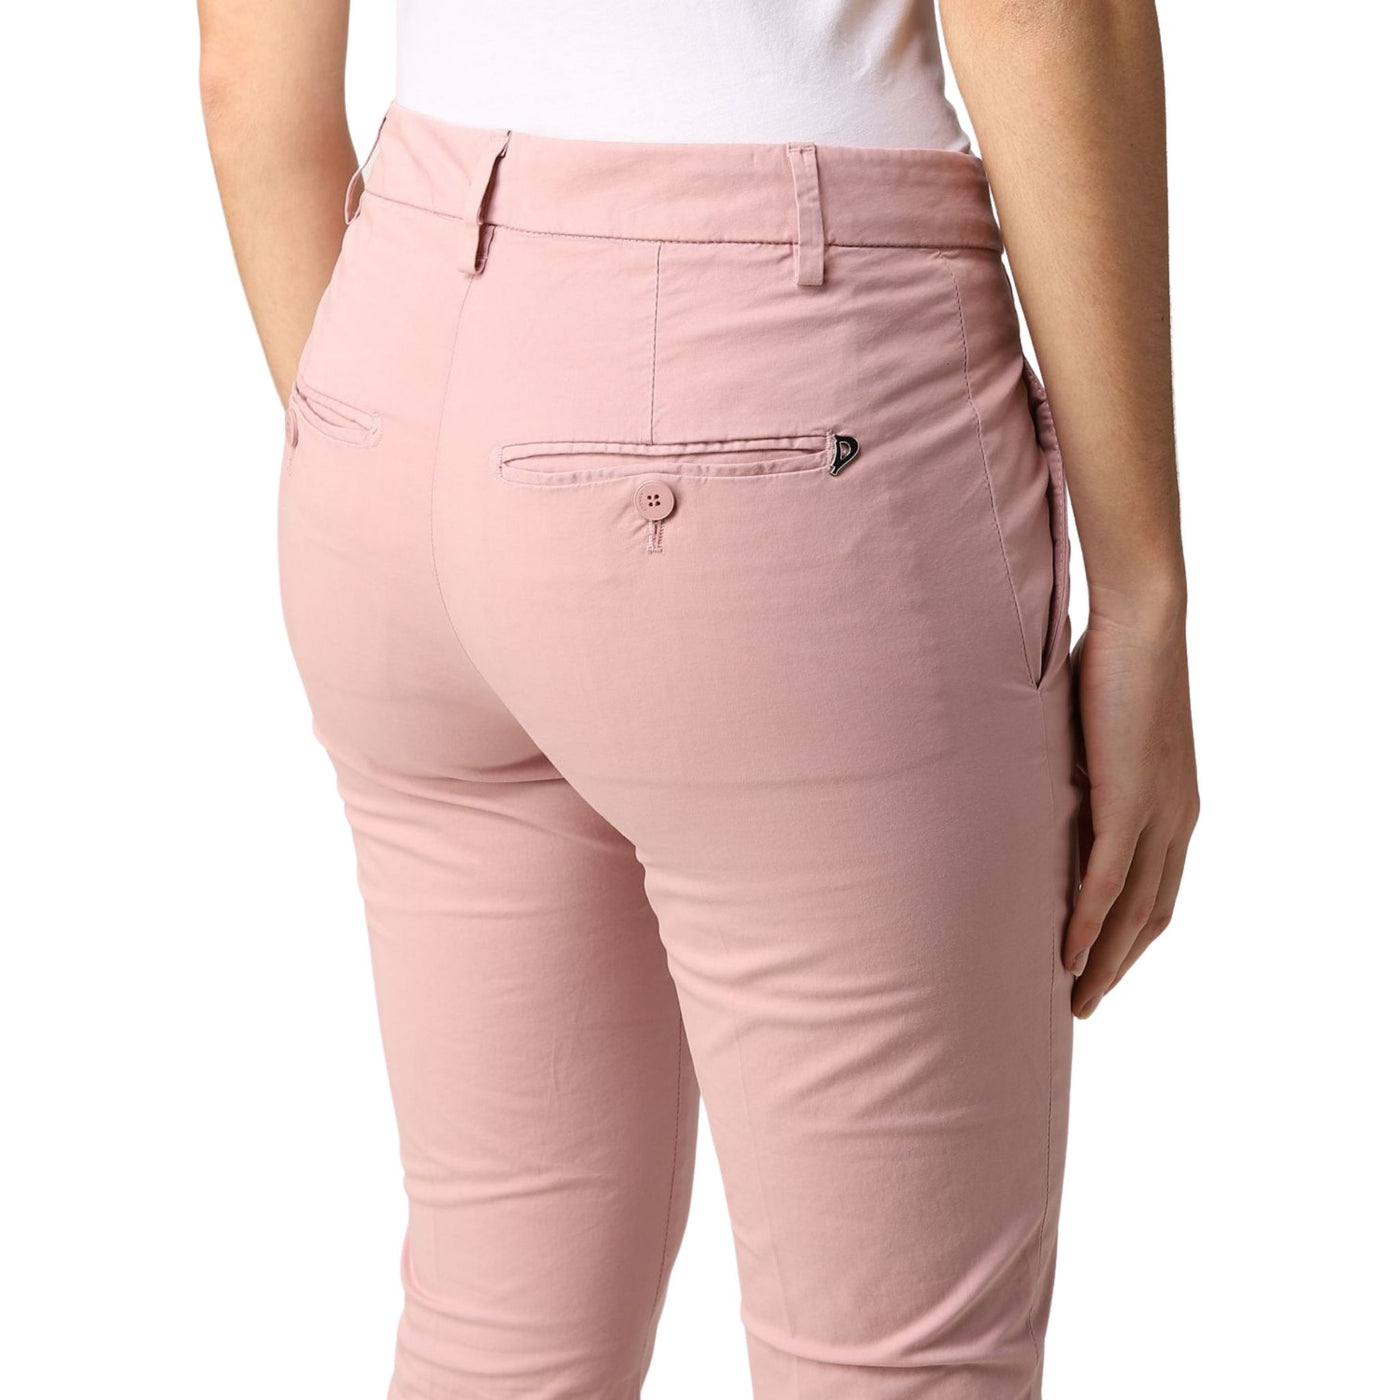 Pantalone Donna rosa Dondup su modella dettaglio retro